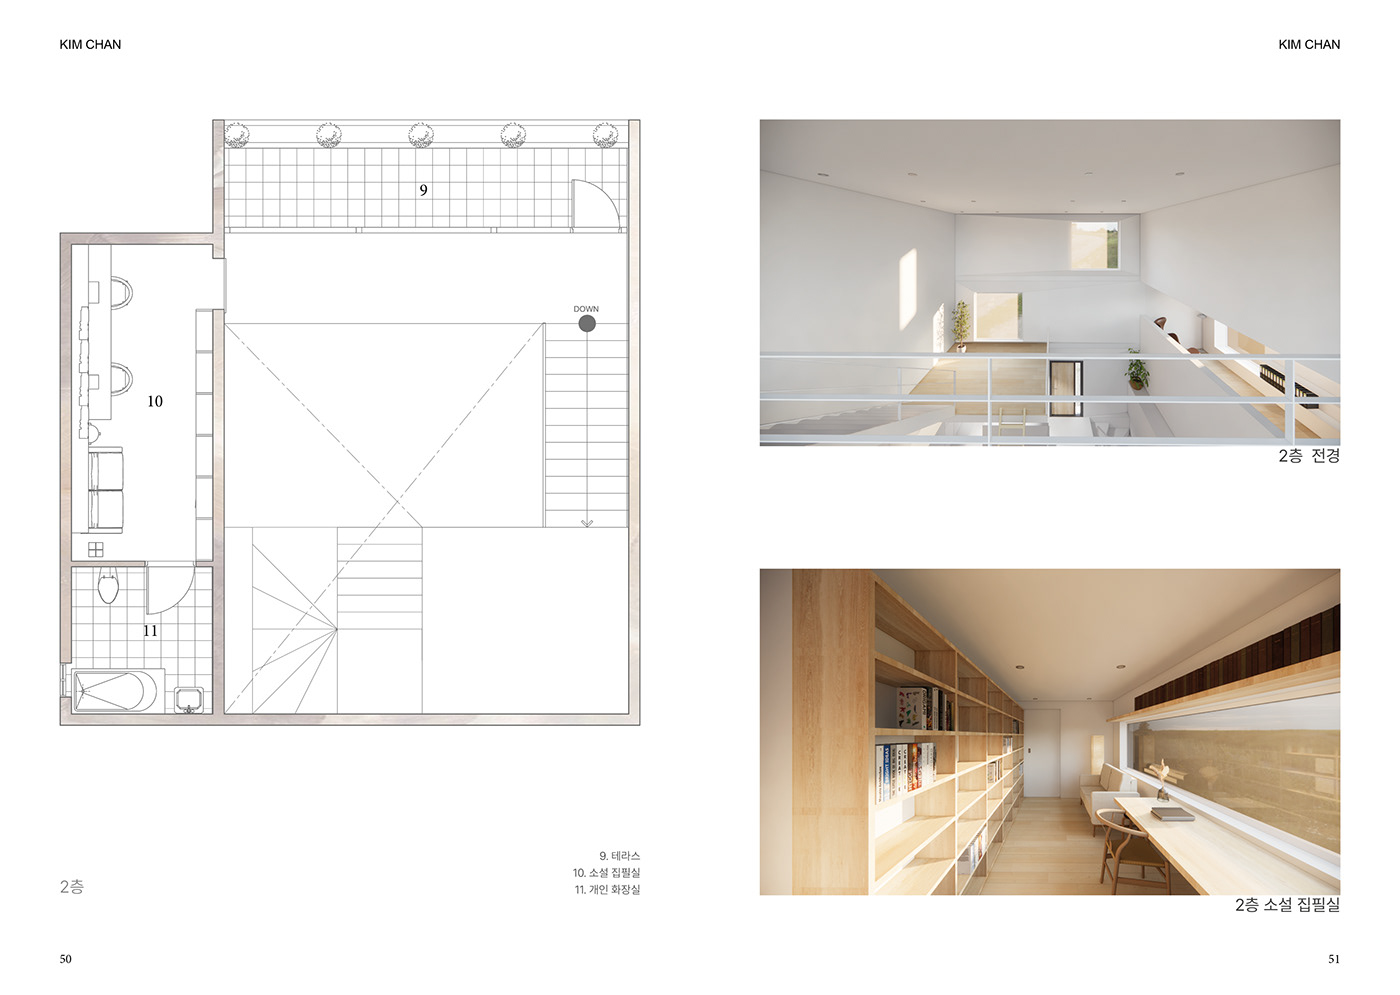 architecture enscape interior design  interior design portfolio interiors Render SketchUP